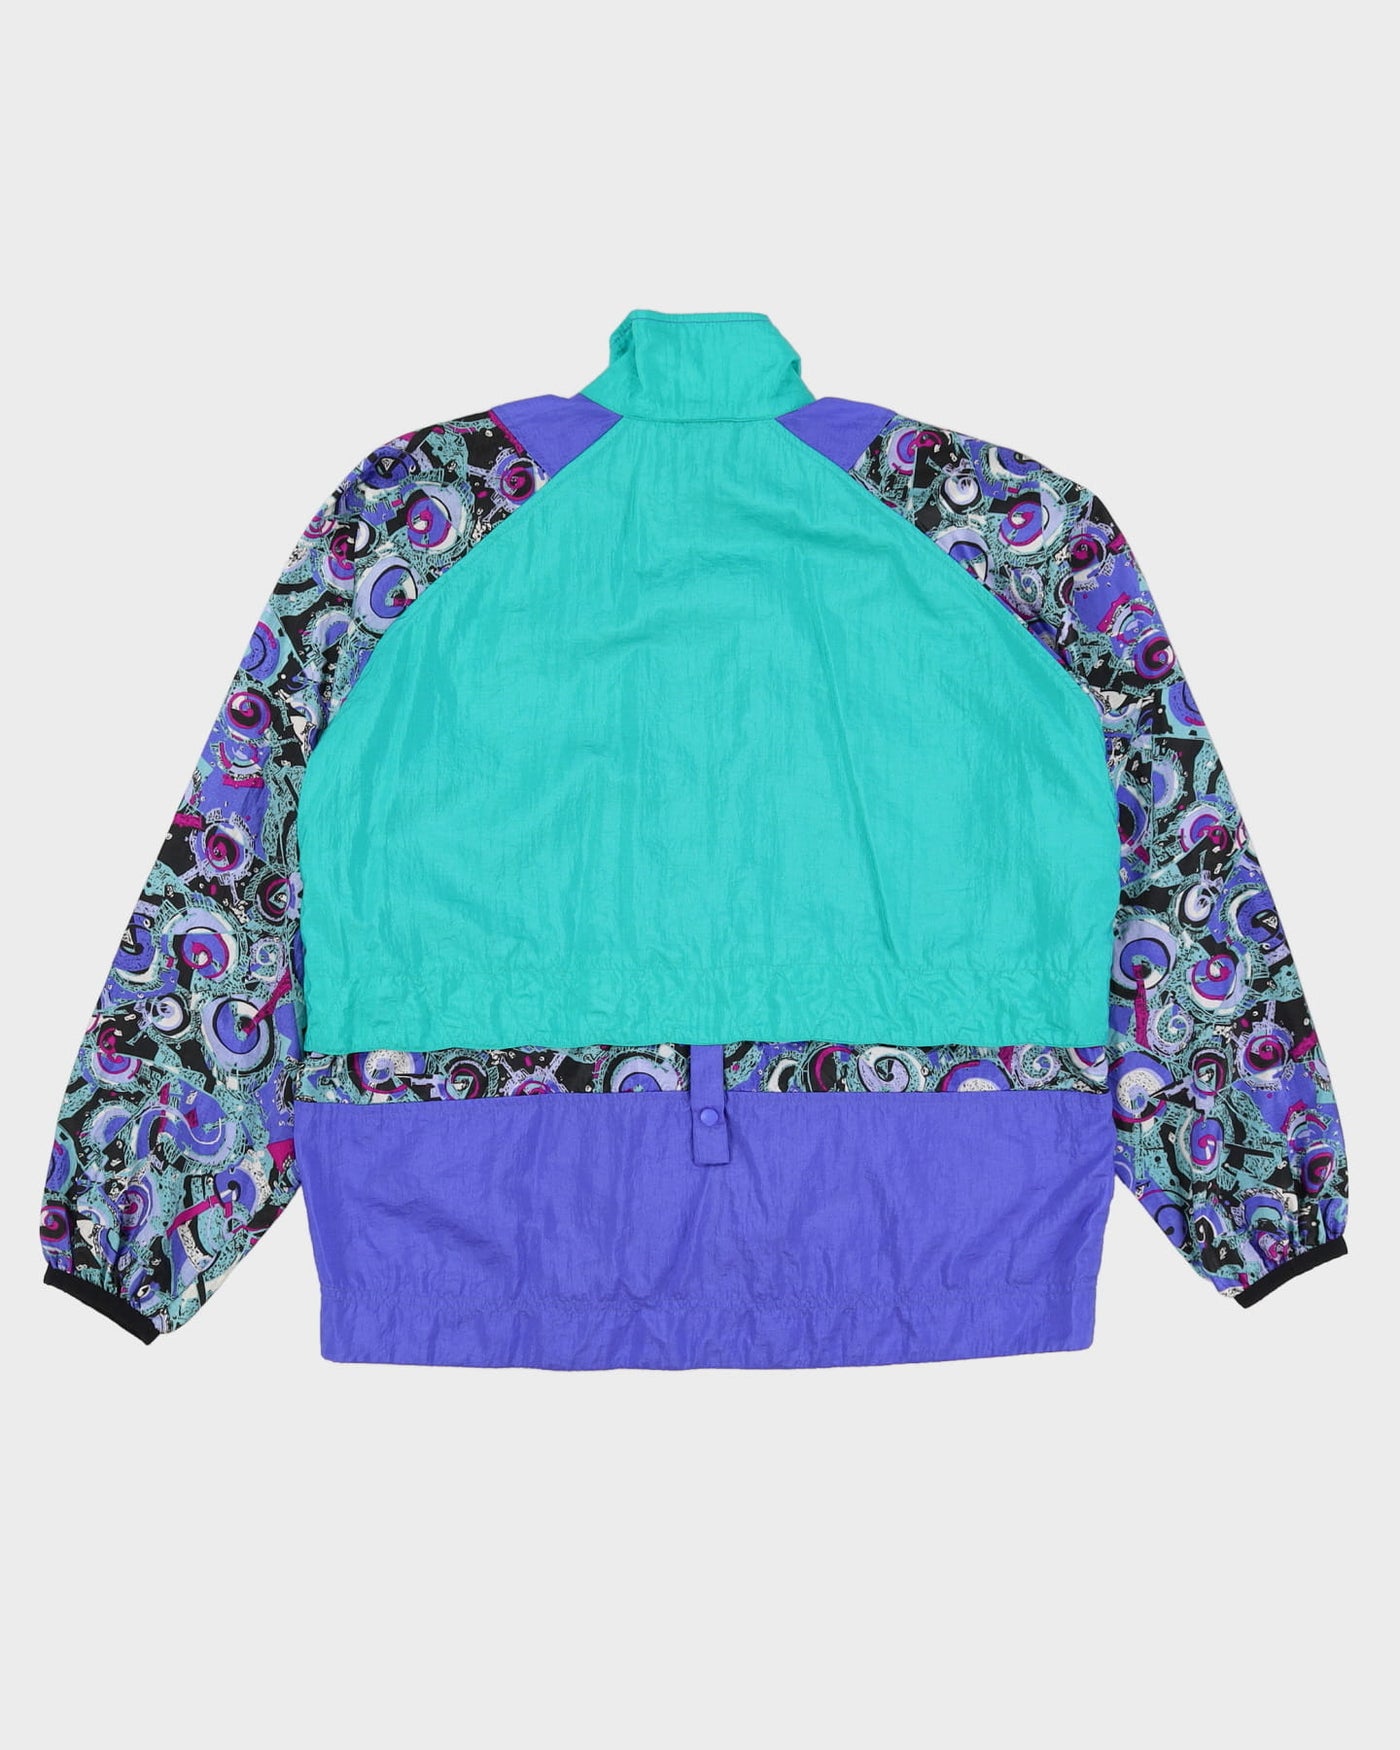 Vintage 90s Nike Patterned Purple / Green Oversized Windbreaker Shell Jacket - S